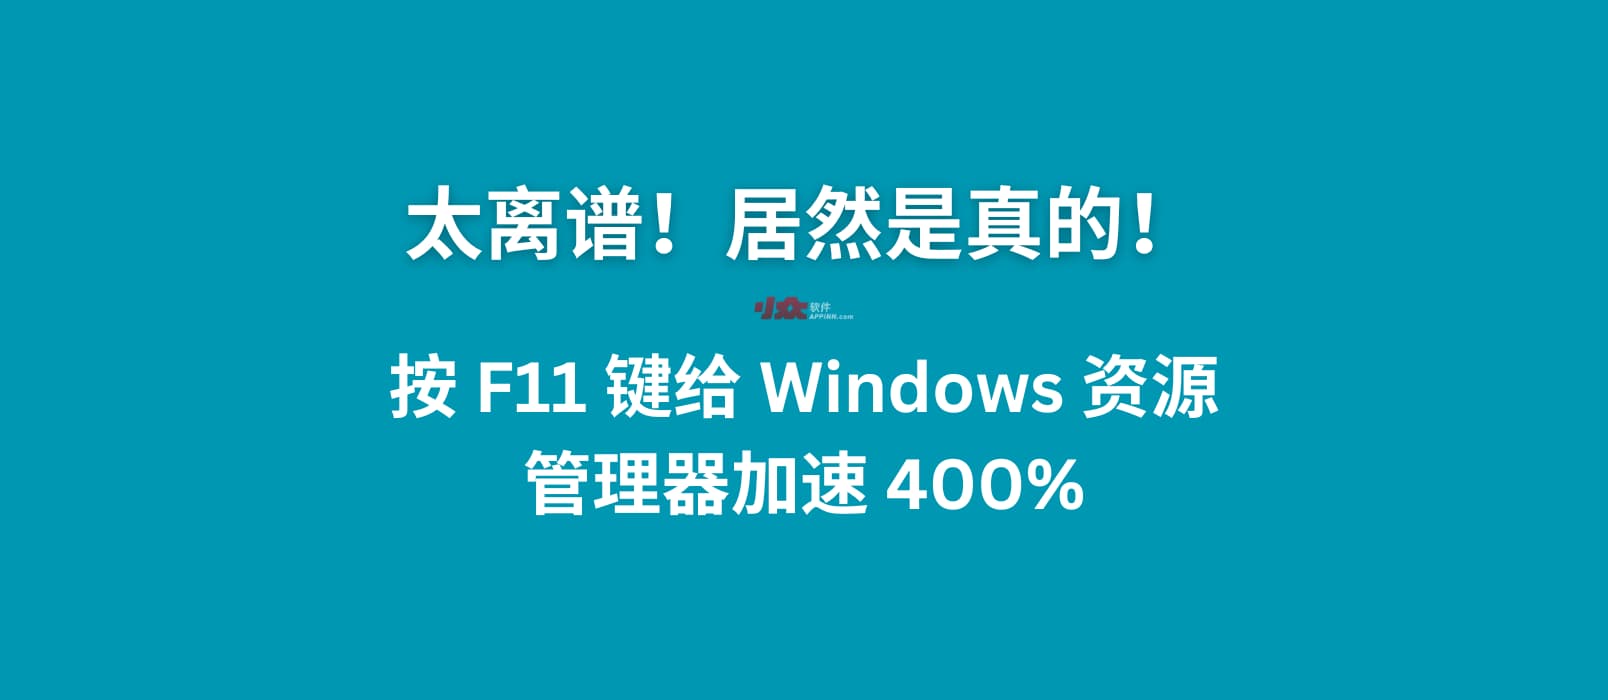 太离谱！按 F11 给 Windows 10/11 资源管理器加速 400%，居然是真的 1